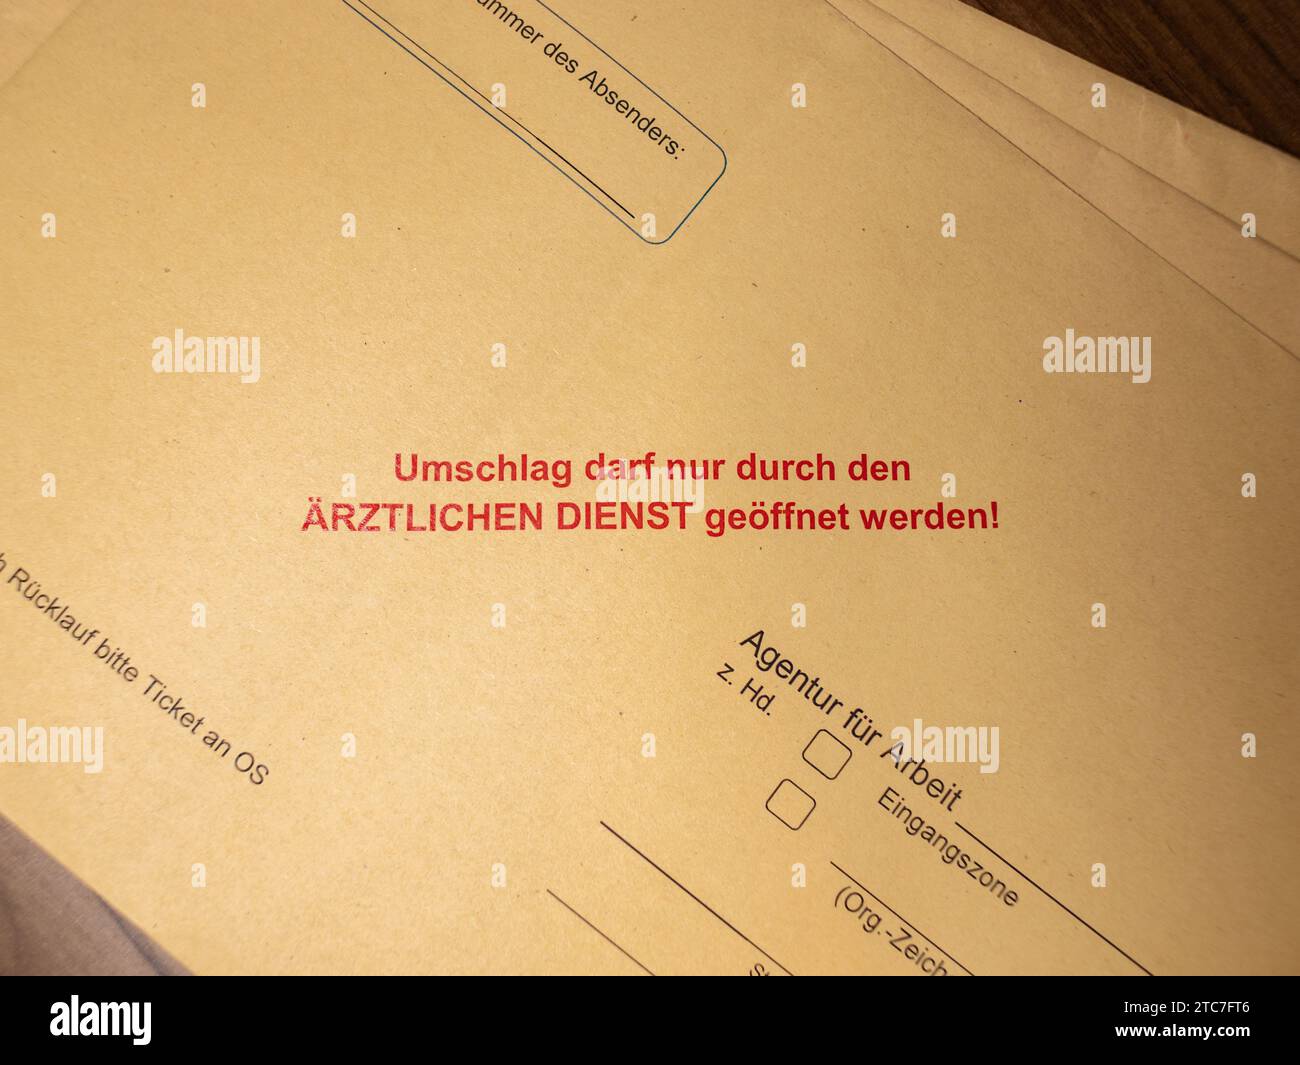 Avis de confidentialité sur une enveloppe en langue allemande. La lettre ne peut être ouverte que par le service médical de l'agence pour l'emploi en Allemagne. Banque D'Images